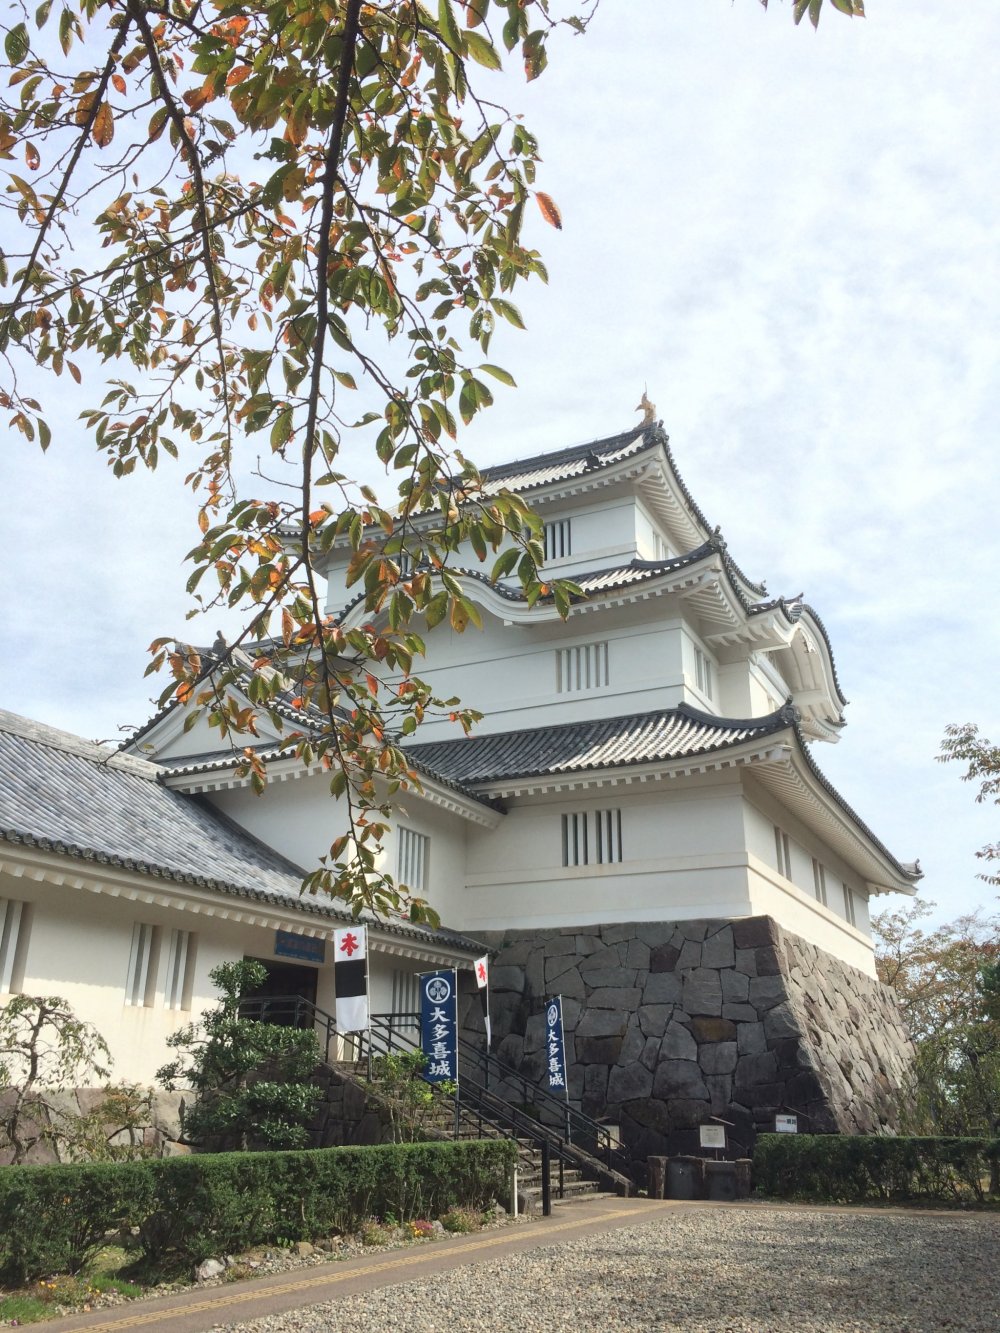 Kastil Osaka terletak di kota Otaki, kota kecil tapi bersejarah di Chiba.